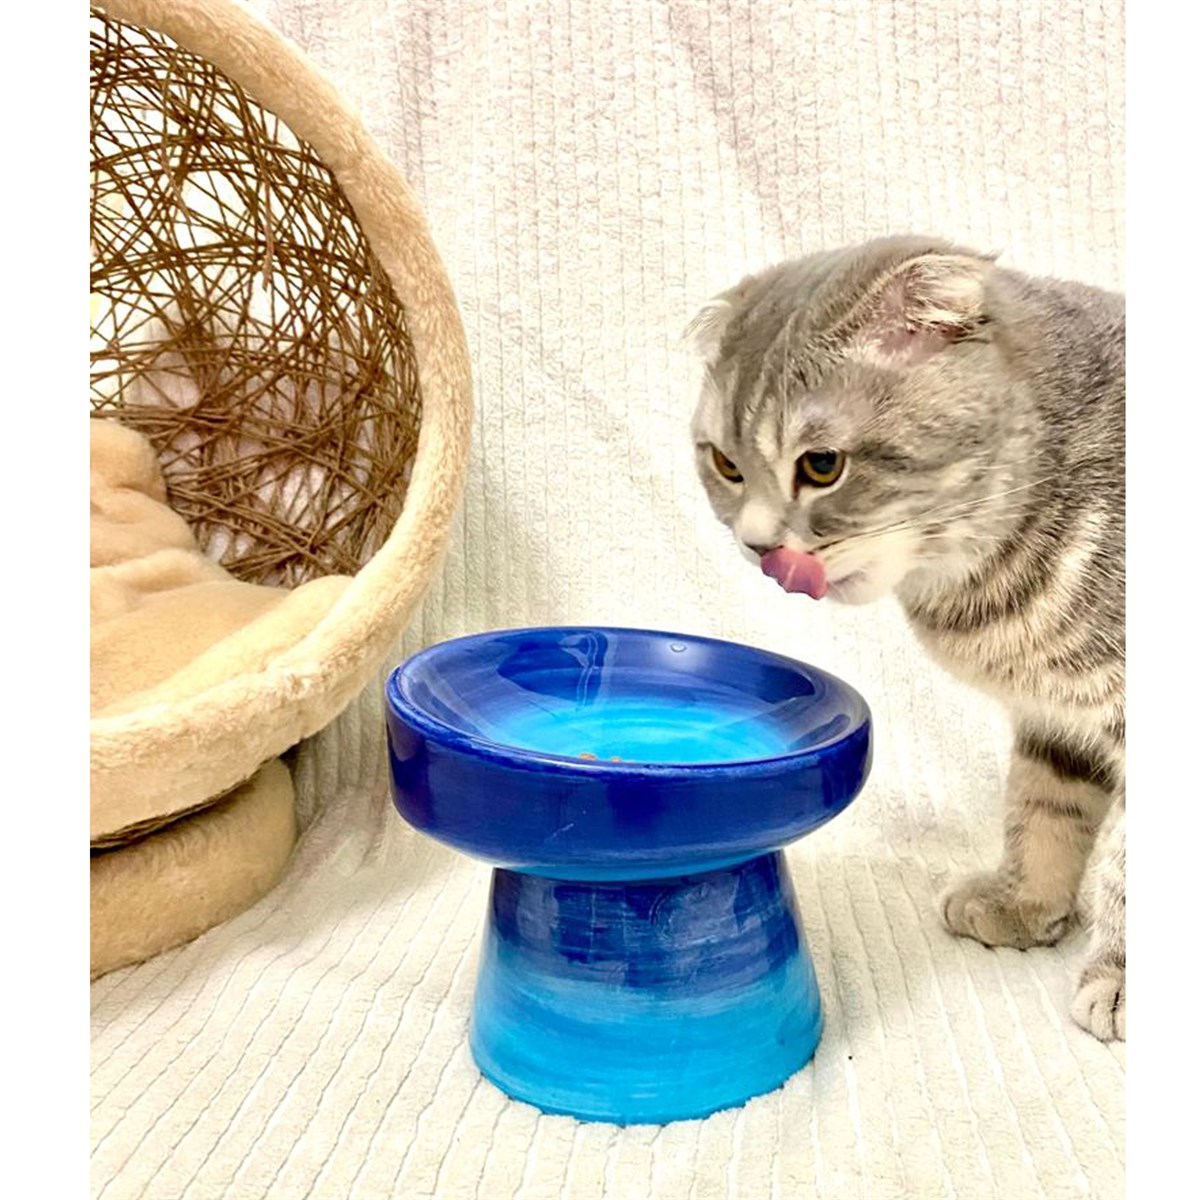 Seramik Kedi ve Kopek Mama Su Kabı (Mavi-Açık Mavi)